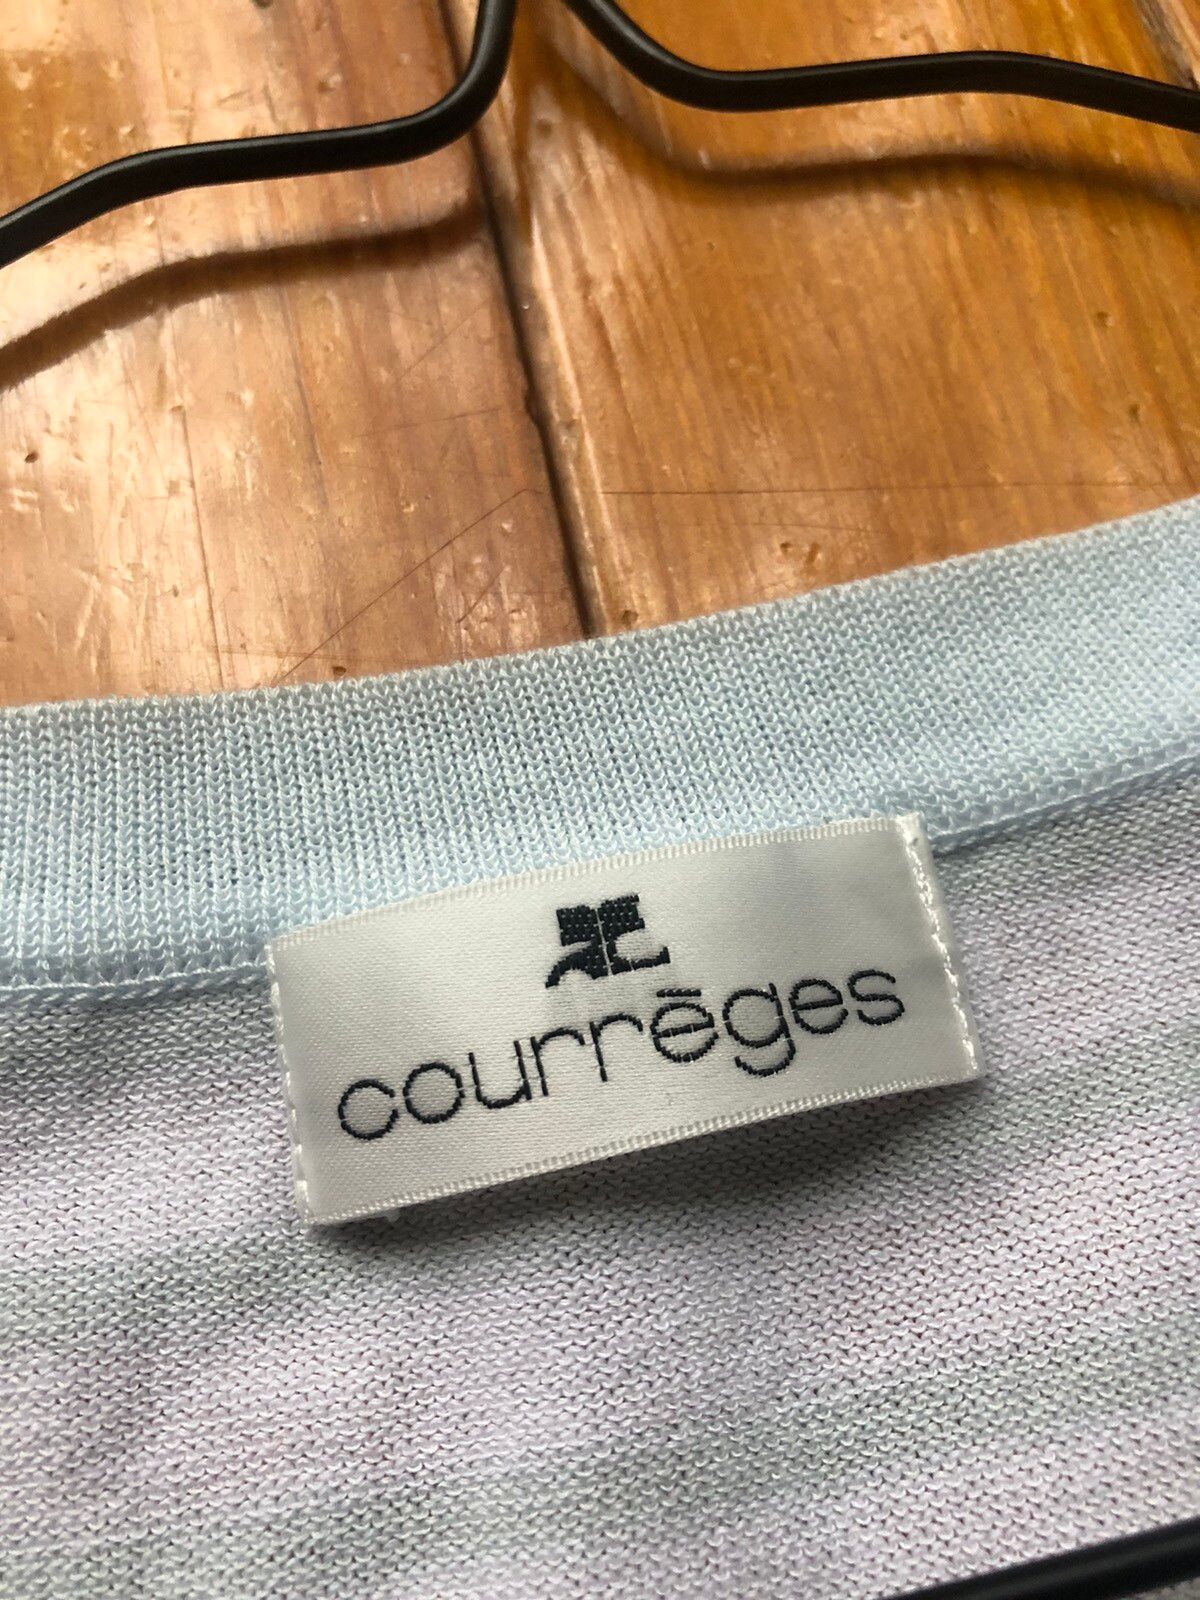 Courreges Courreges Tie Up Striped Cardigan Size M / US 6-8 / IT 42-44 - 11 Thumbnail